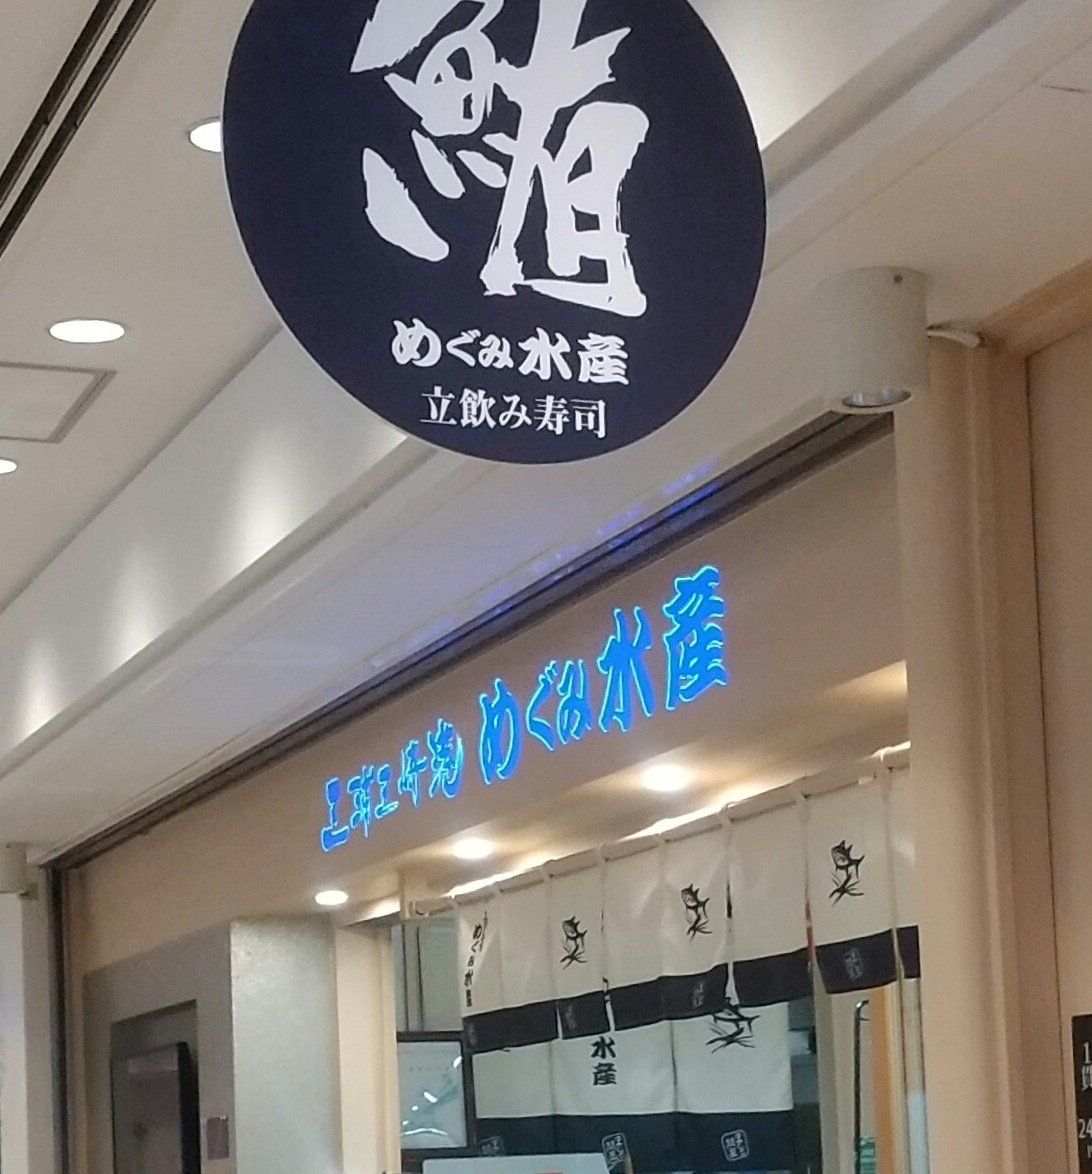 私用で横浜駅へ来てます🚃💨 めぐみ水産さんの寿司各種🍣 横浜駅に来ると立ち食い寿司店 巡りをしています😁ちょこっと つまむには最適な店それでいて 鮮度抜群良いネタ揃って旨い😋 たま～の楽しみで